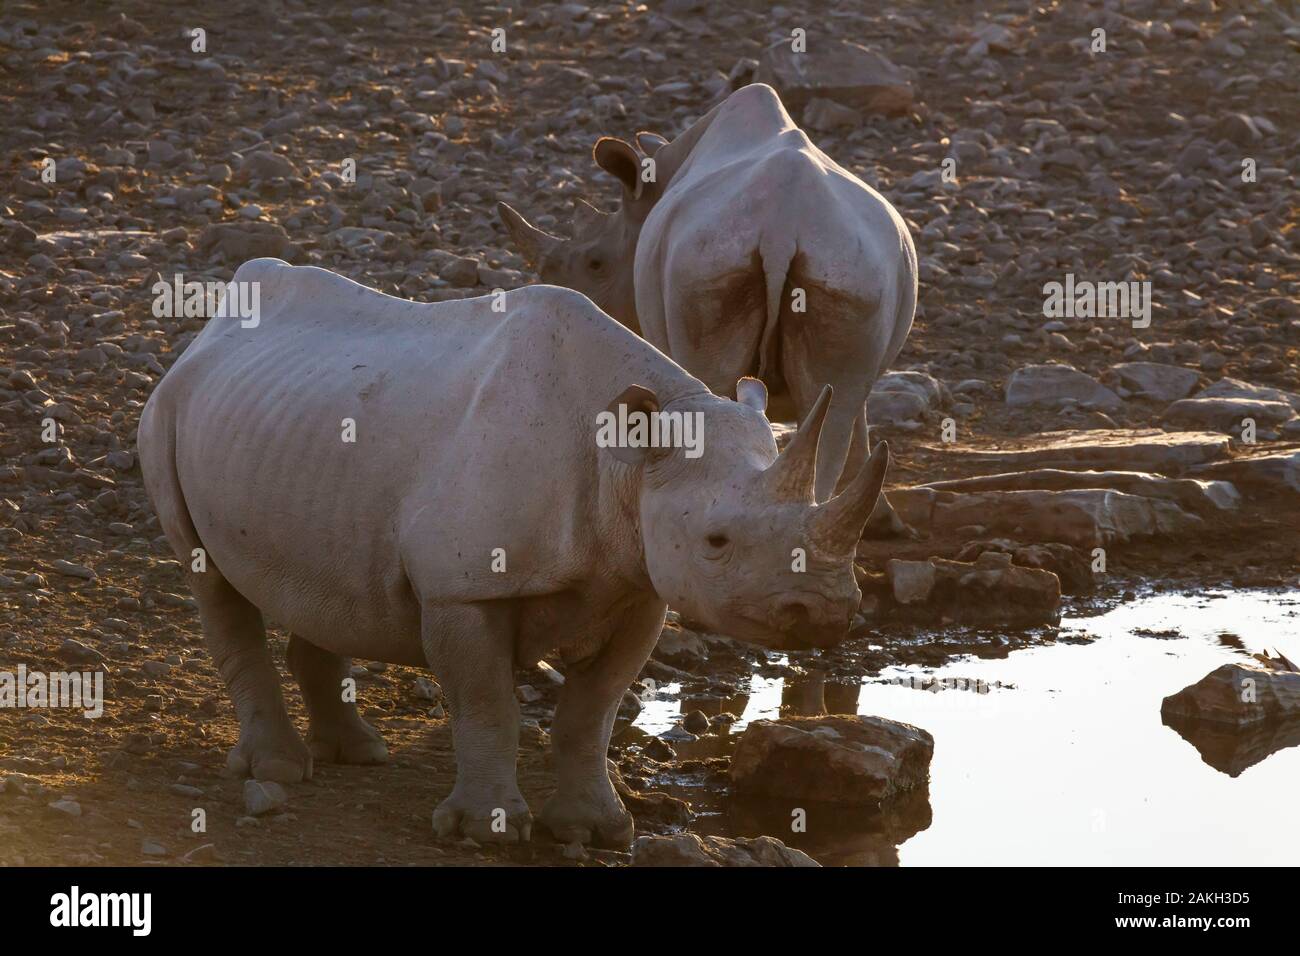 Namibia, Oshikoto province, Etosha National Park, black rhinoceros (Diceros bicornis) at a water hole Stock Photo